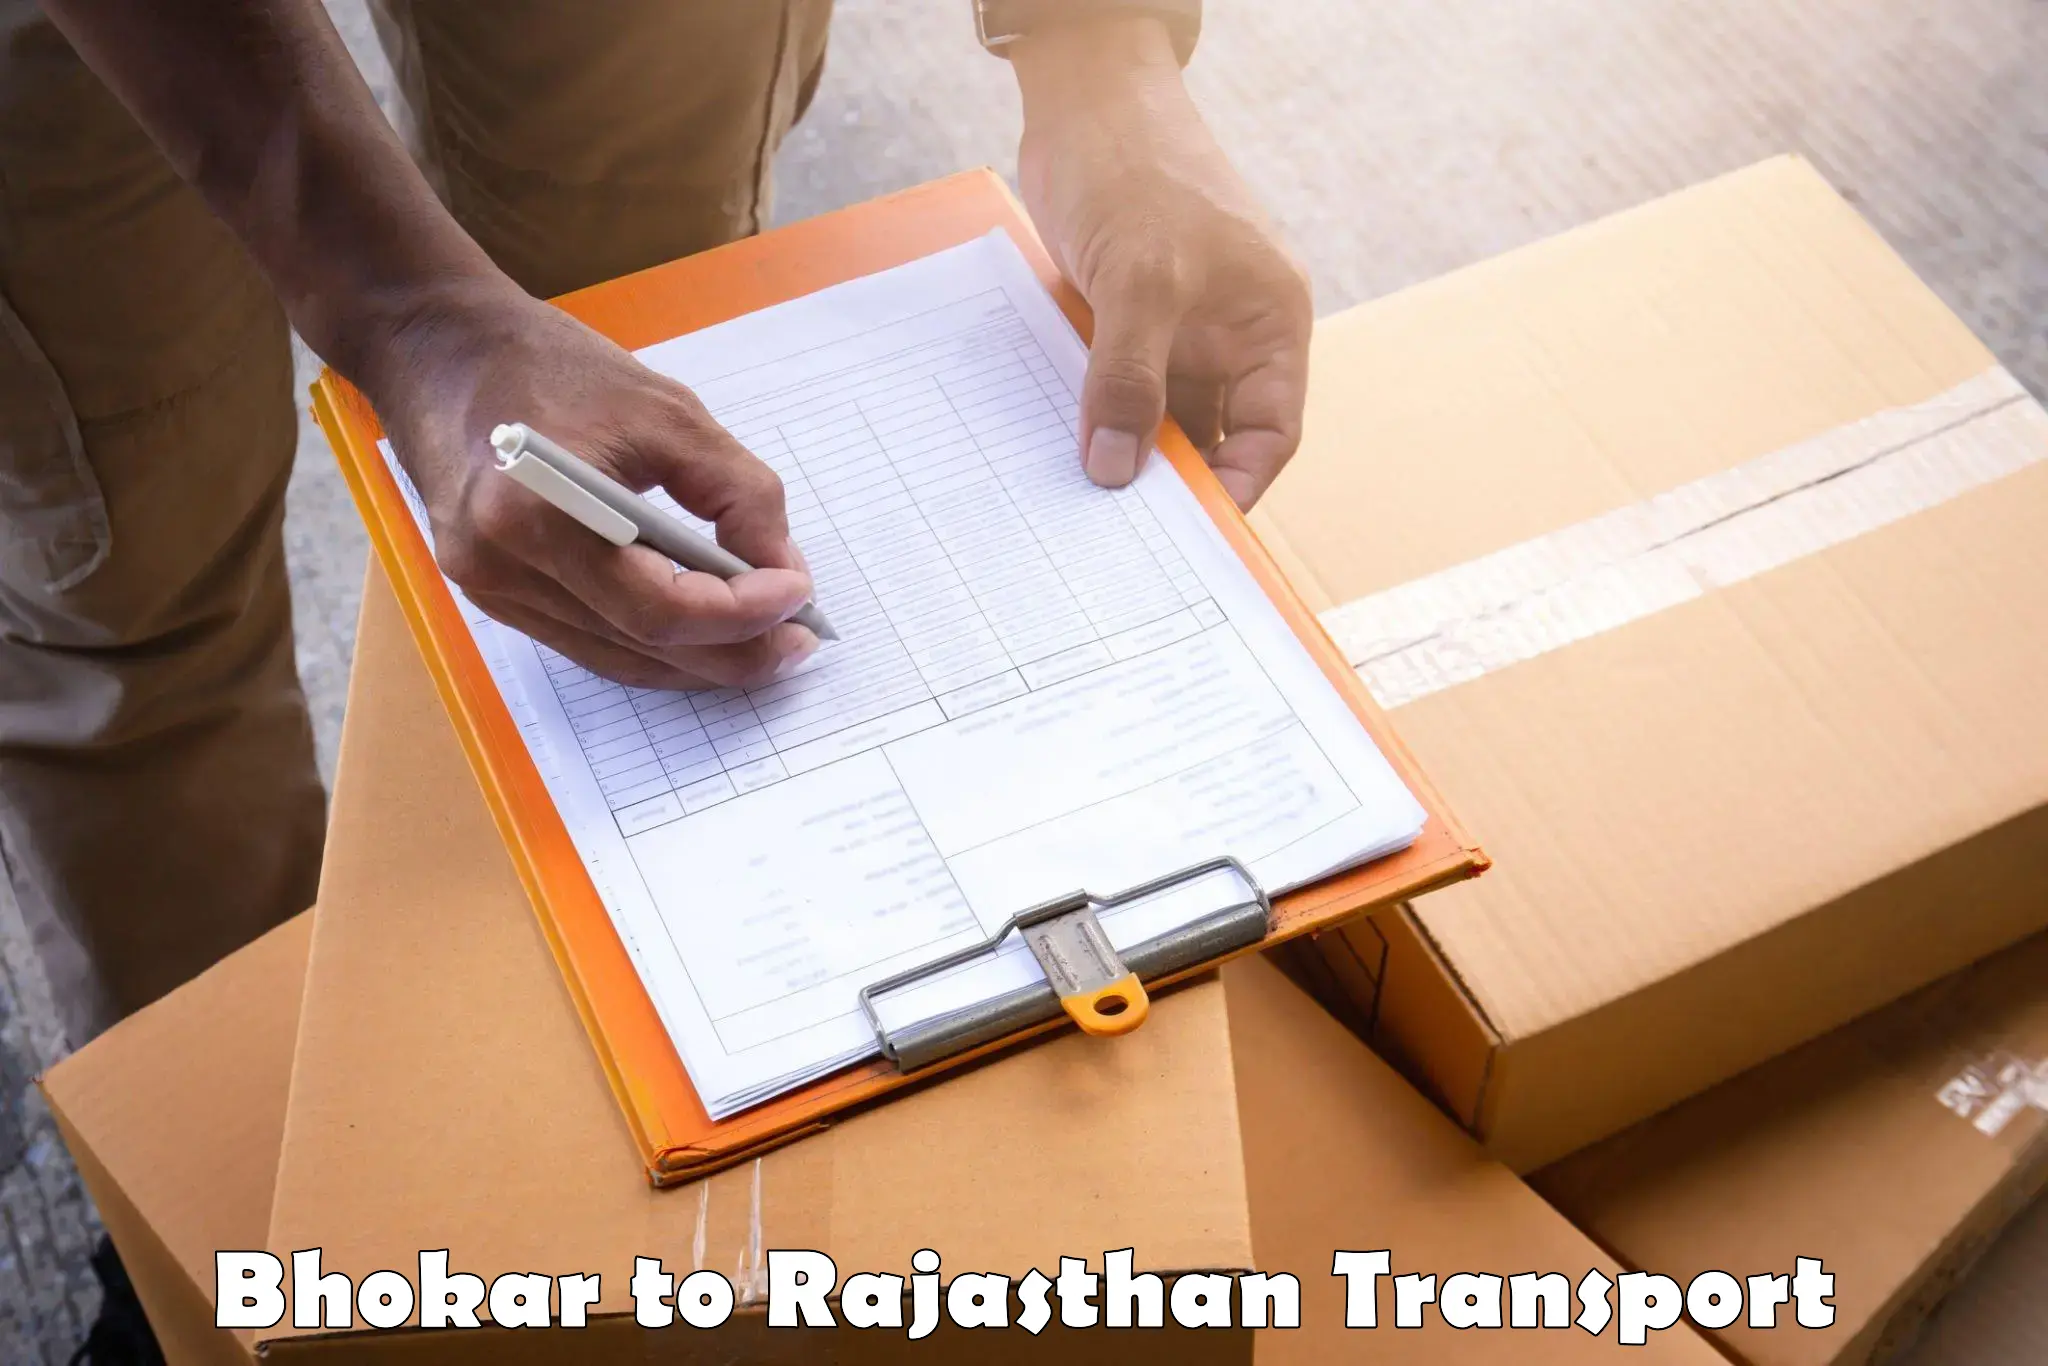 Container transport service Bhokar to Sri Vijaynagar